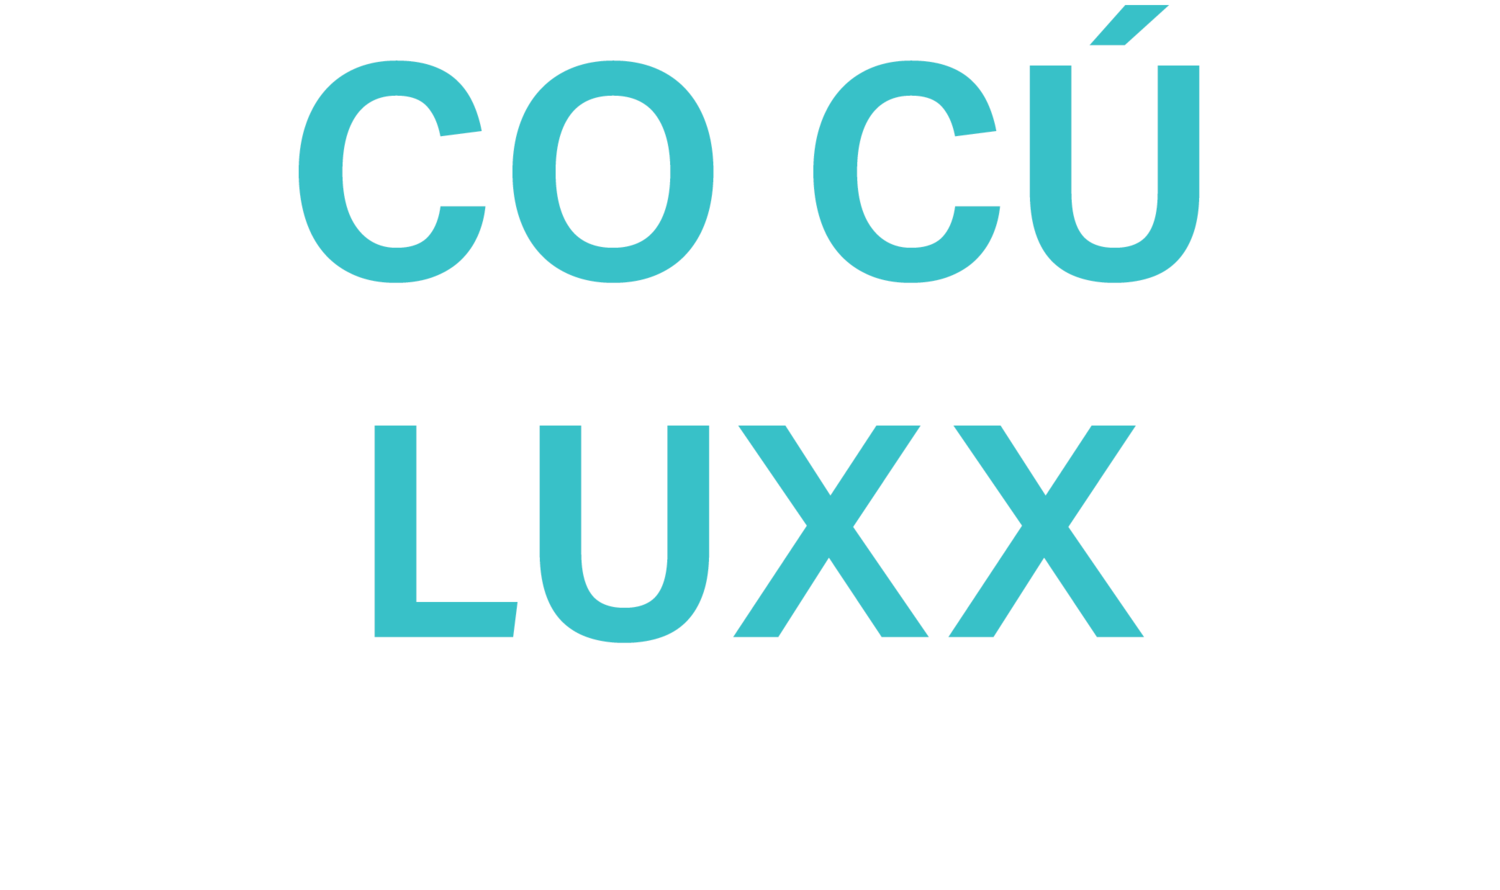 Cocu Luxx